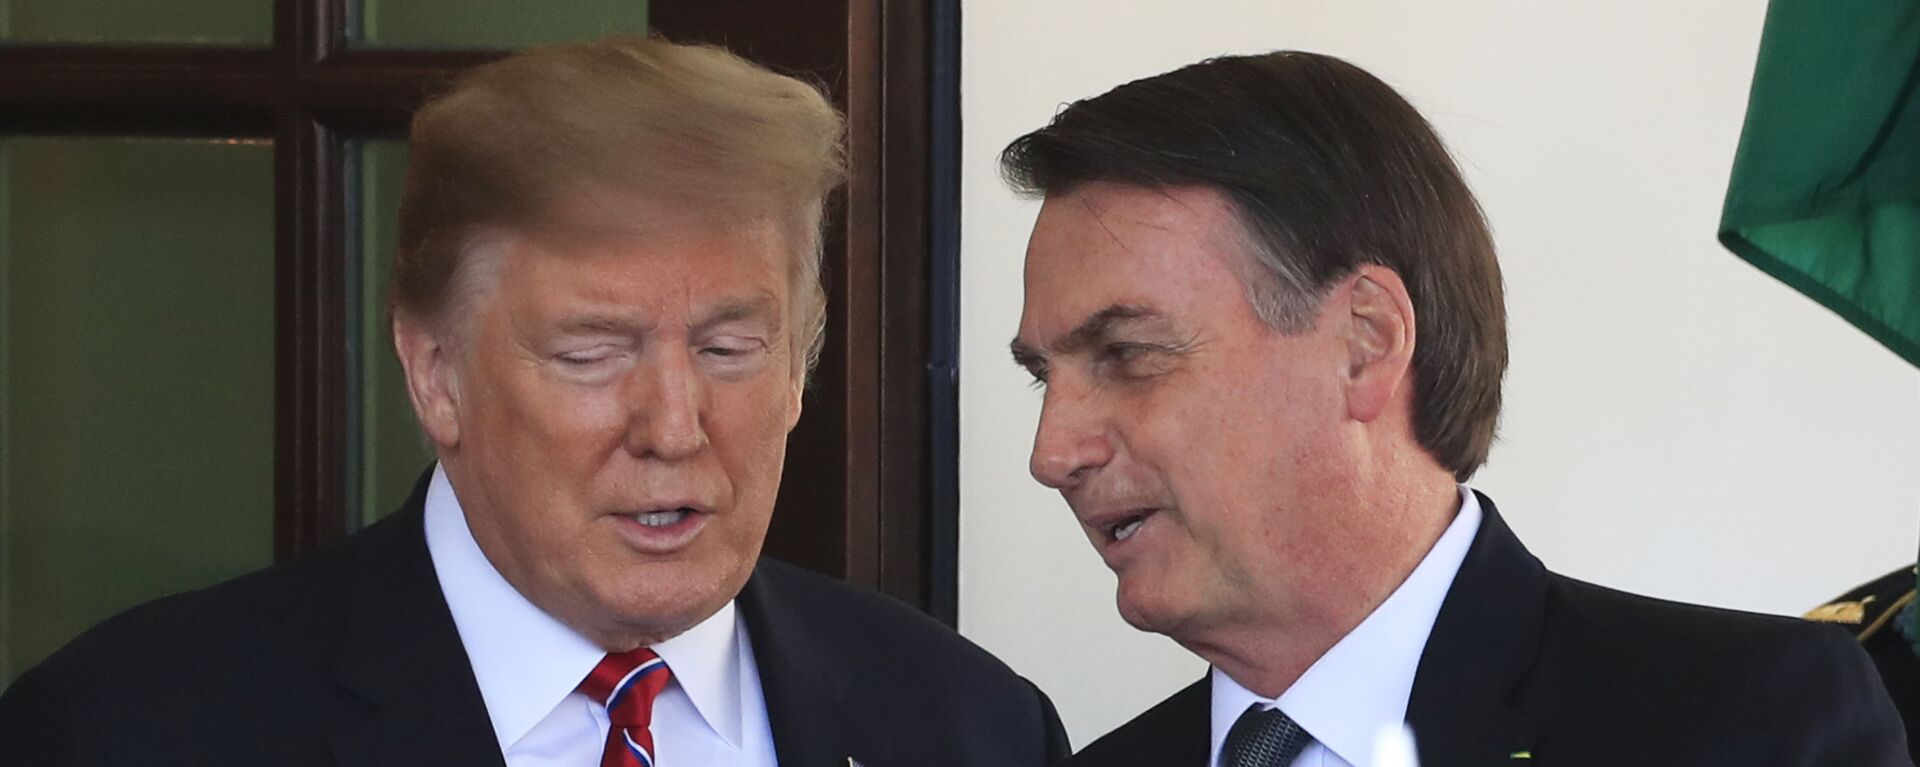 Em Washington, o presidente dos Estados Unidos, Donald Trump (à esquerda), e o presidente do Brasil, Jair Bolsonaro (à direita), conversam na Casa Branca em 19 de março de 2019. - Sputnik Brasil, 1920, 15.12.2020